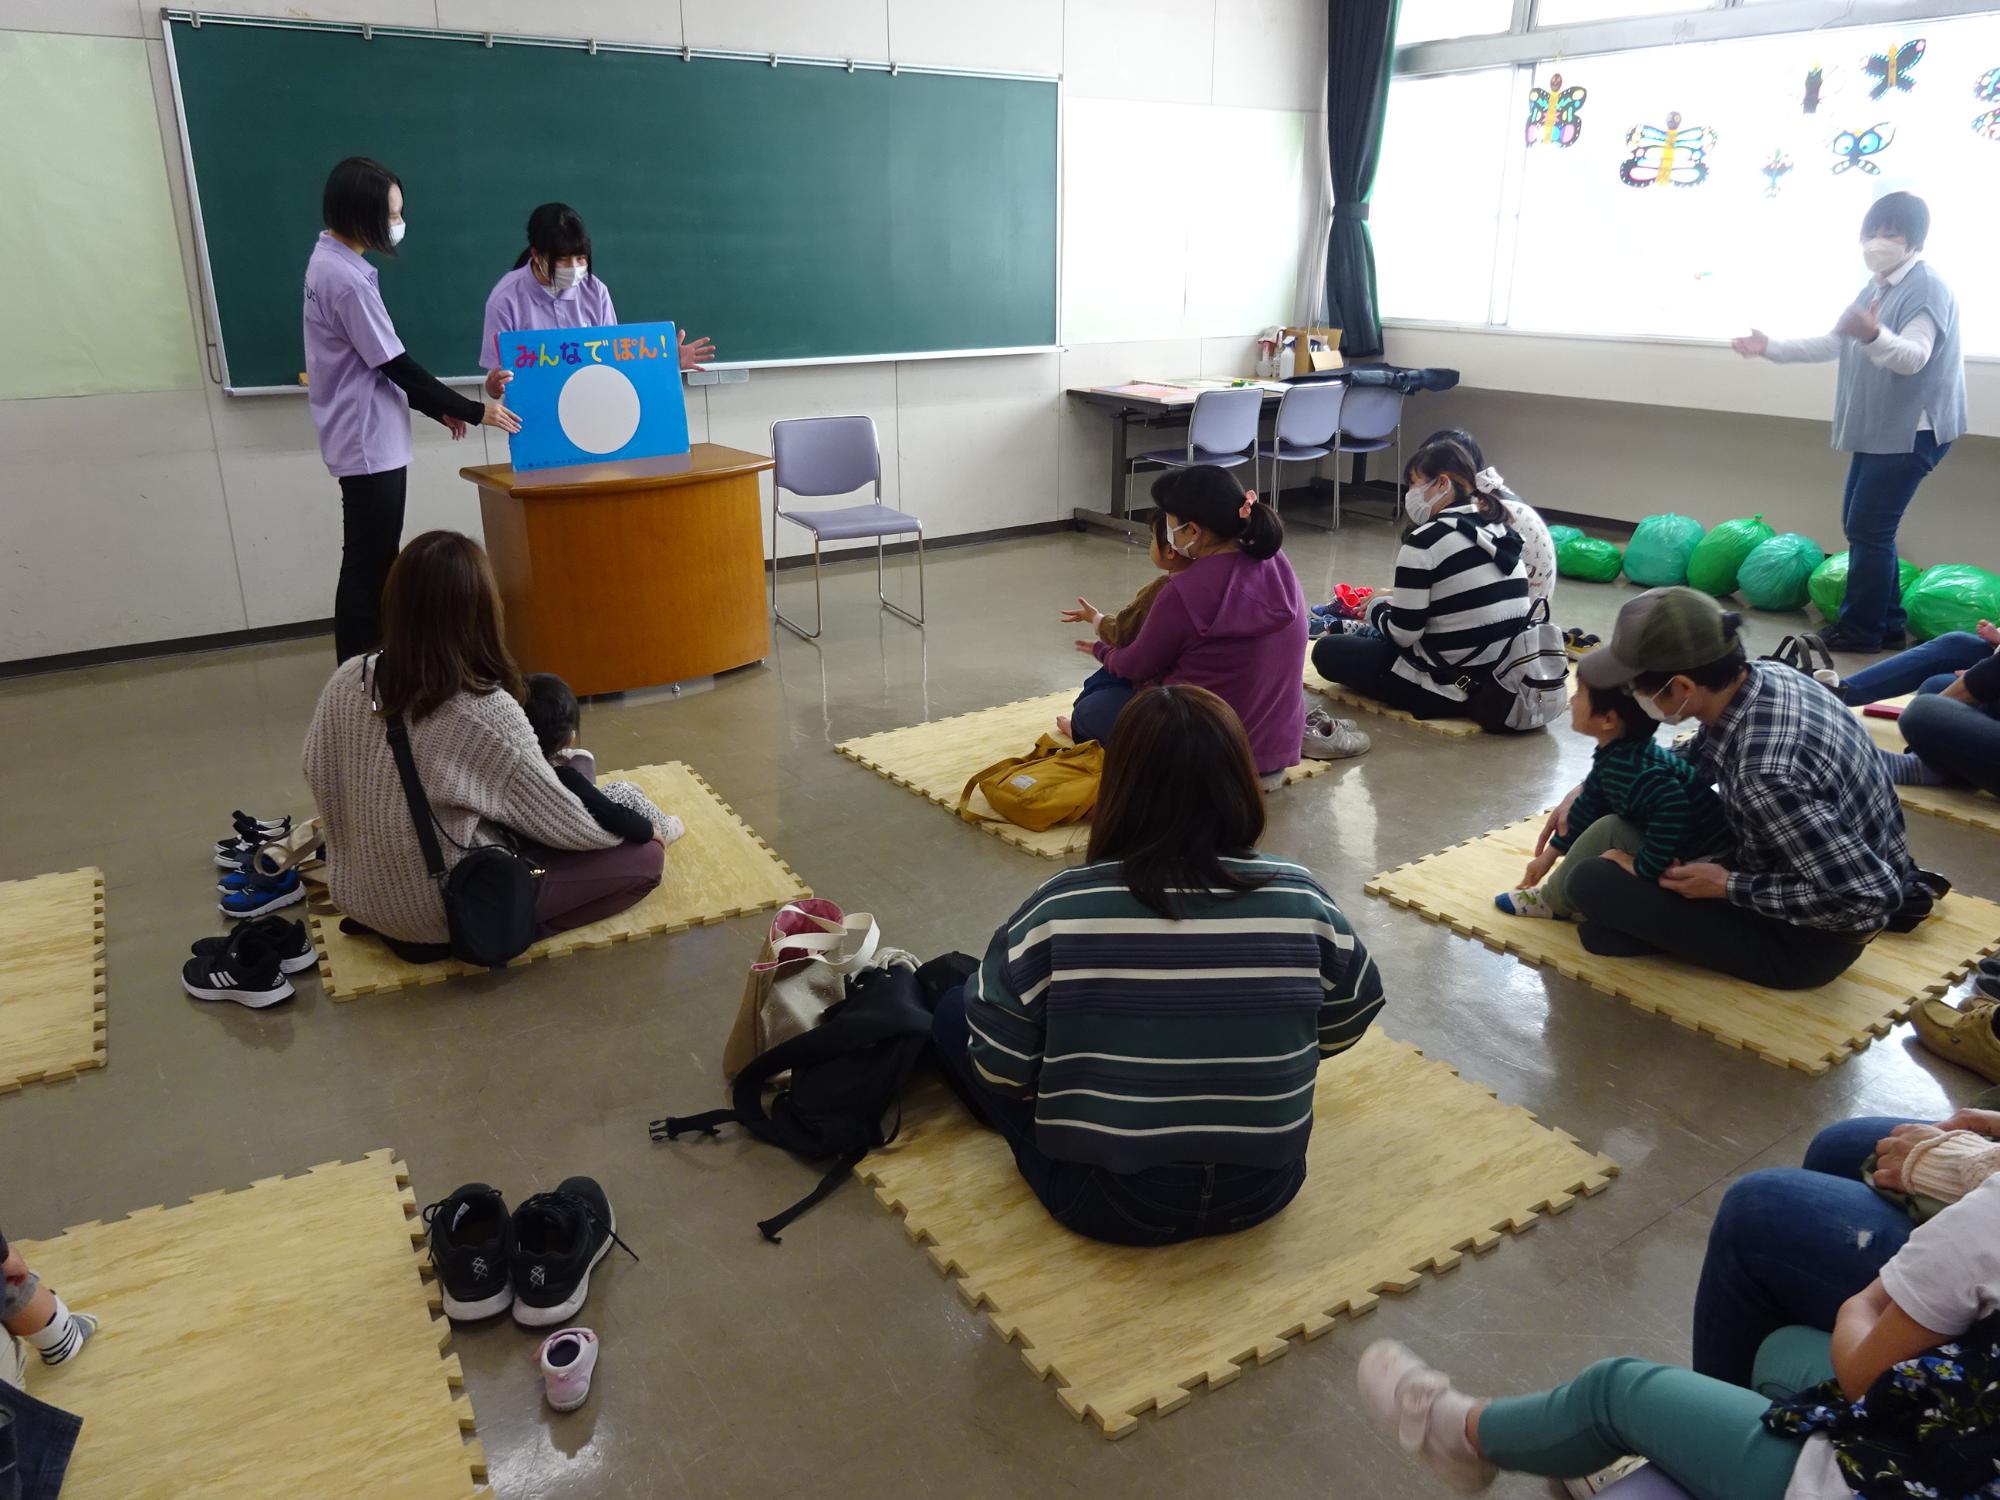 大阪信愛学院大学の学生が参加者の子どもたちに大型絵本の読み聞かせをしている様子